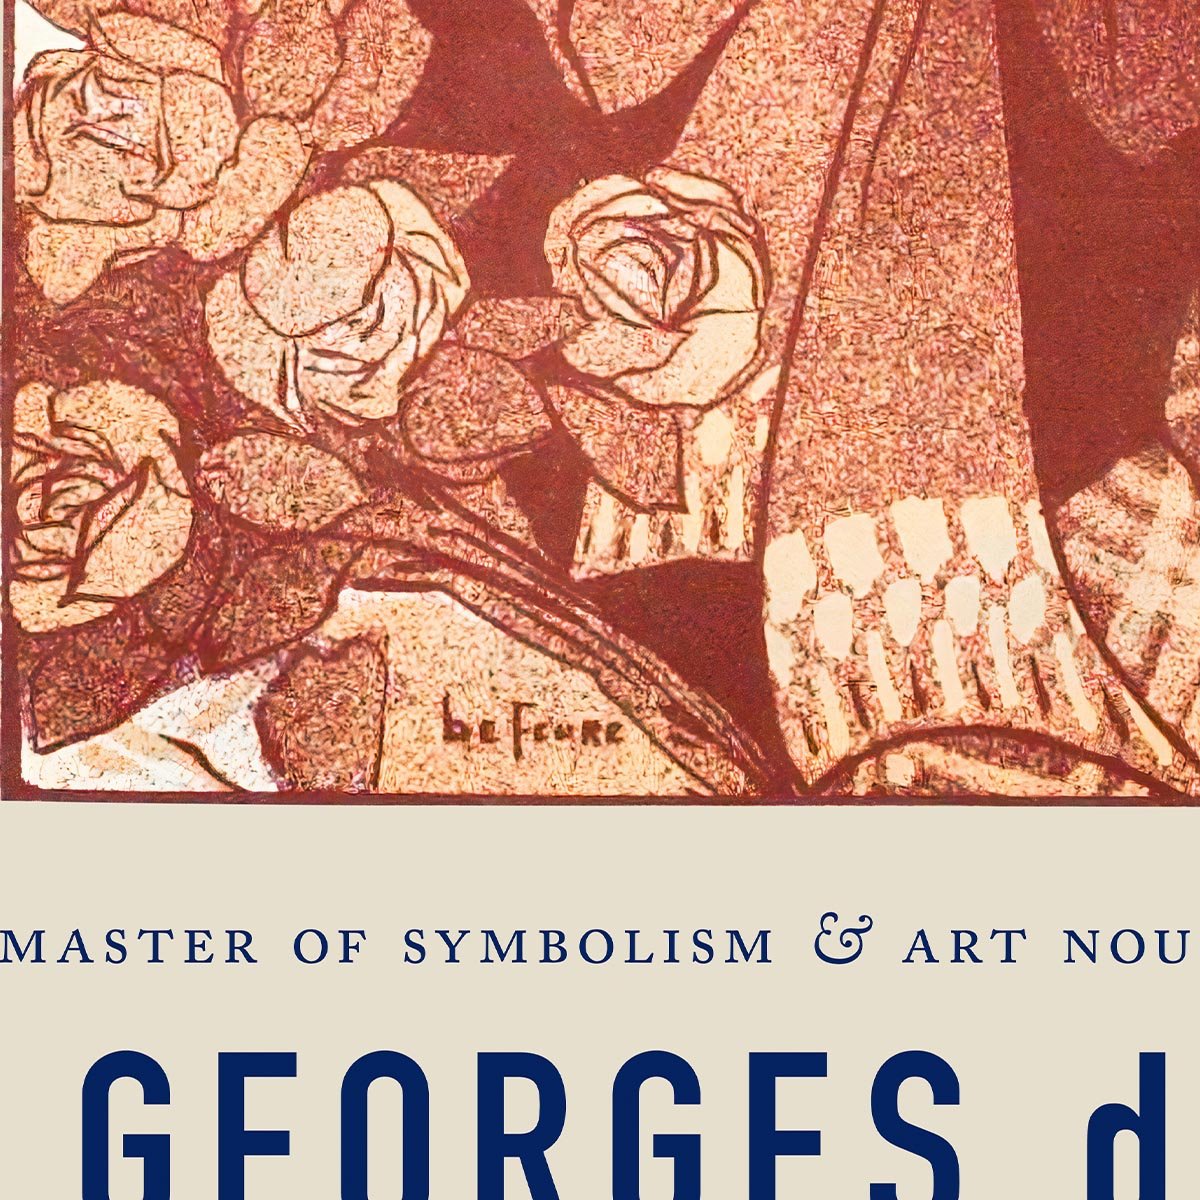 Georges de Feure Chansons d'Atelier Poster